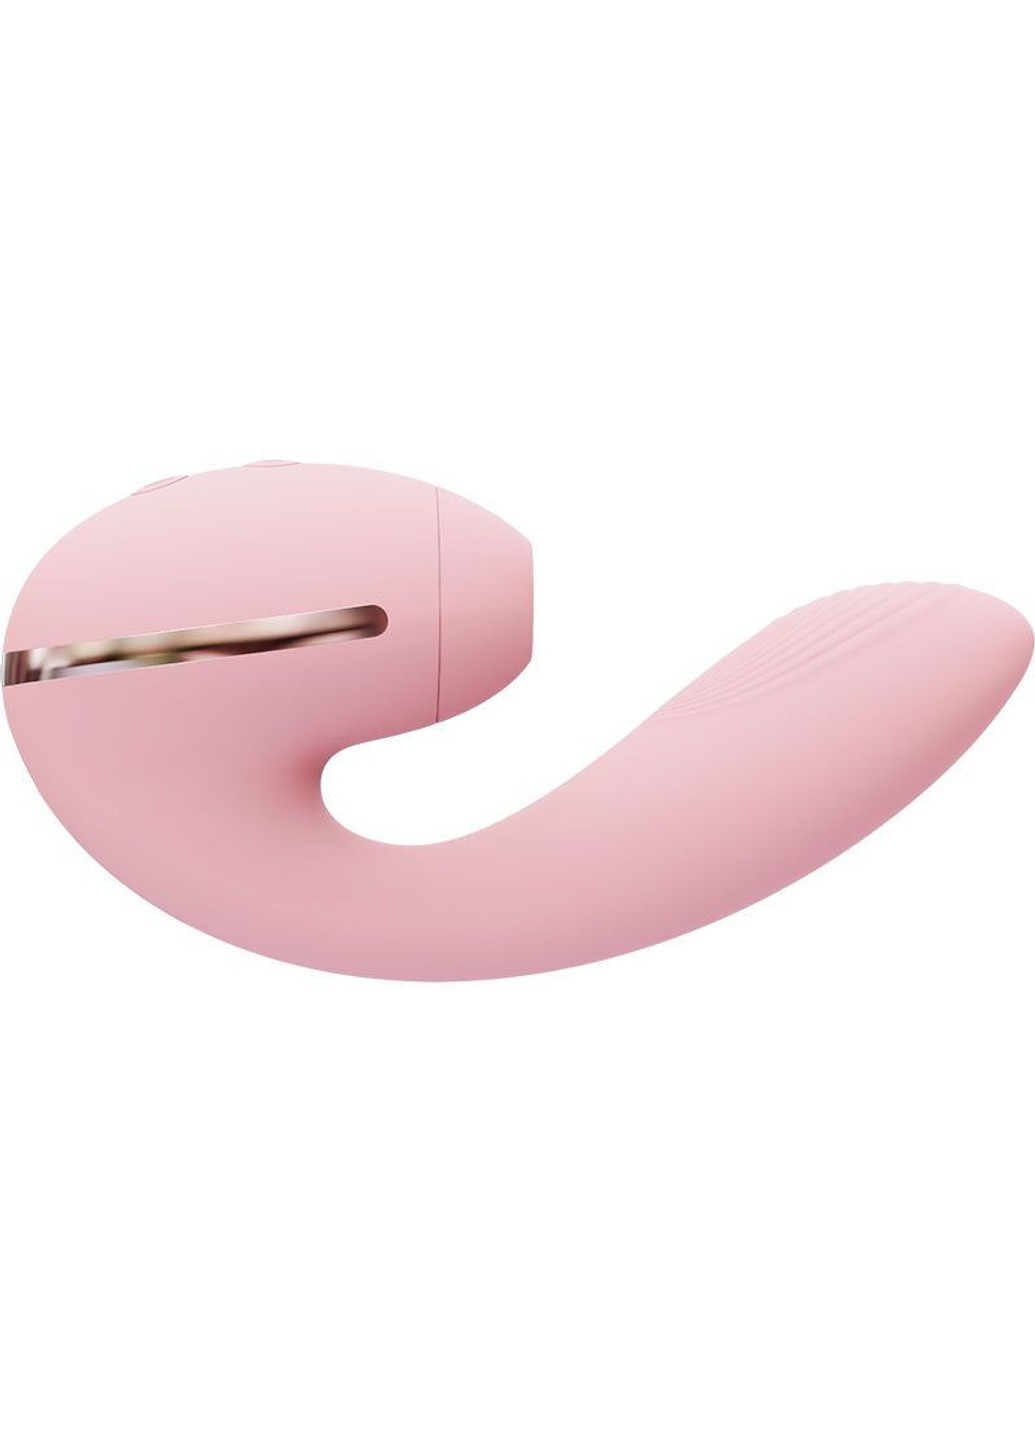 Вакуумный вибратор Tina Mini Pink, вагинально-клиторальный KisToy (277235412)